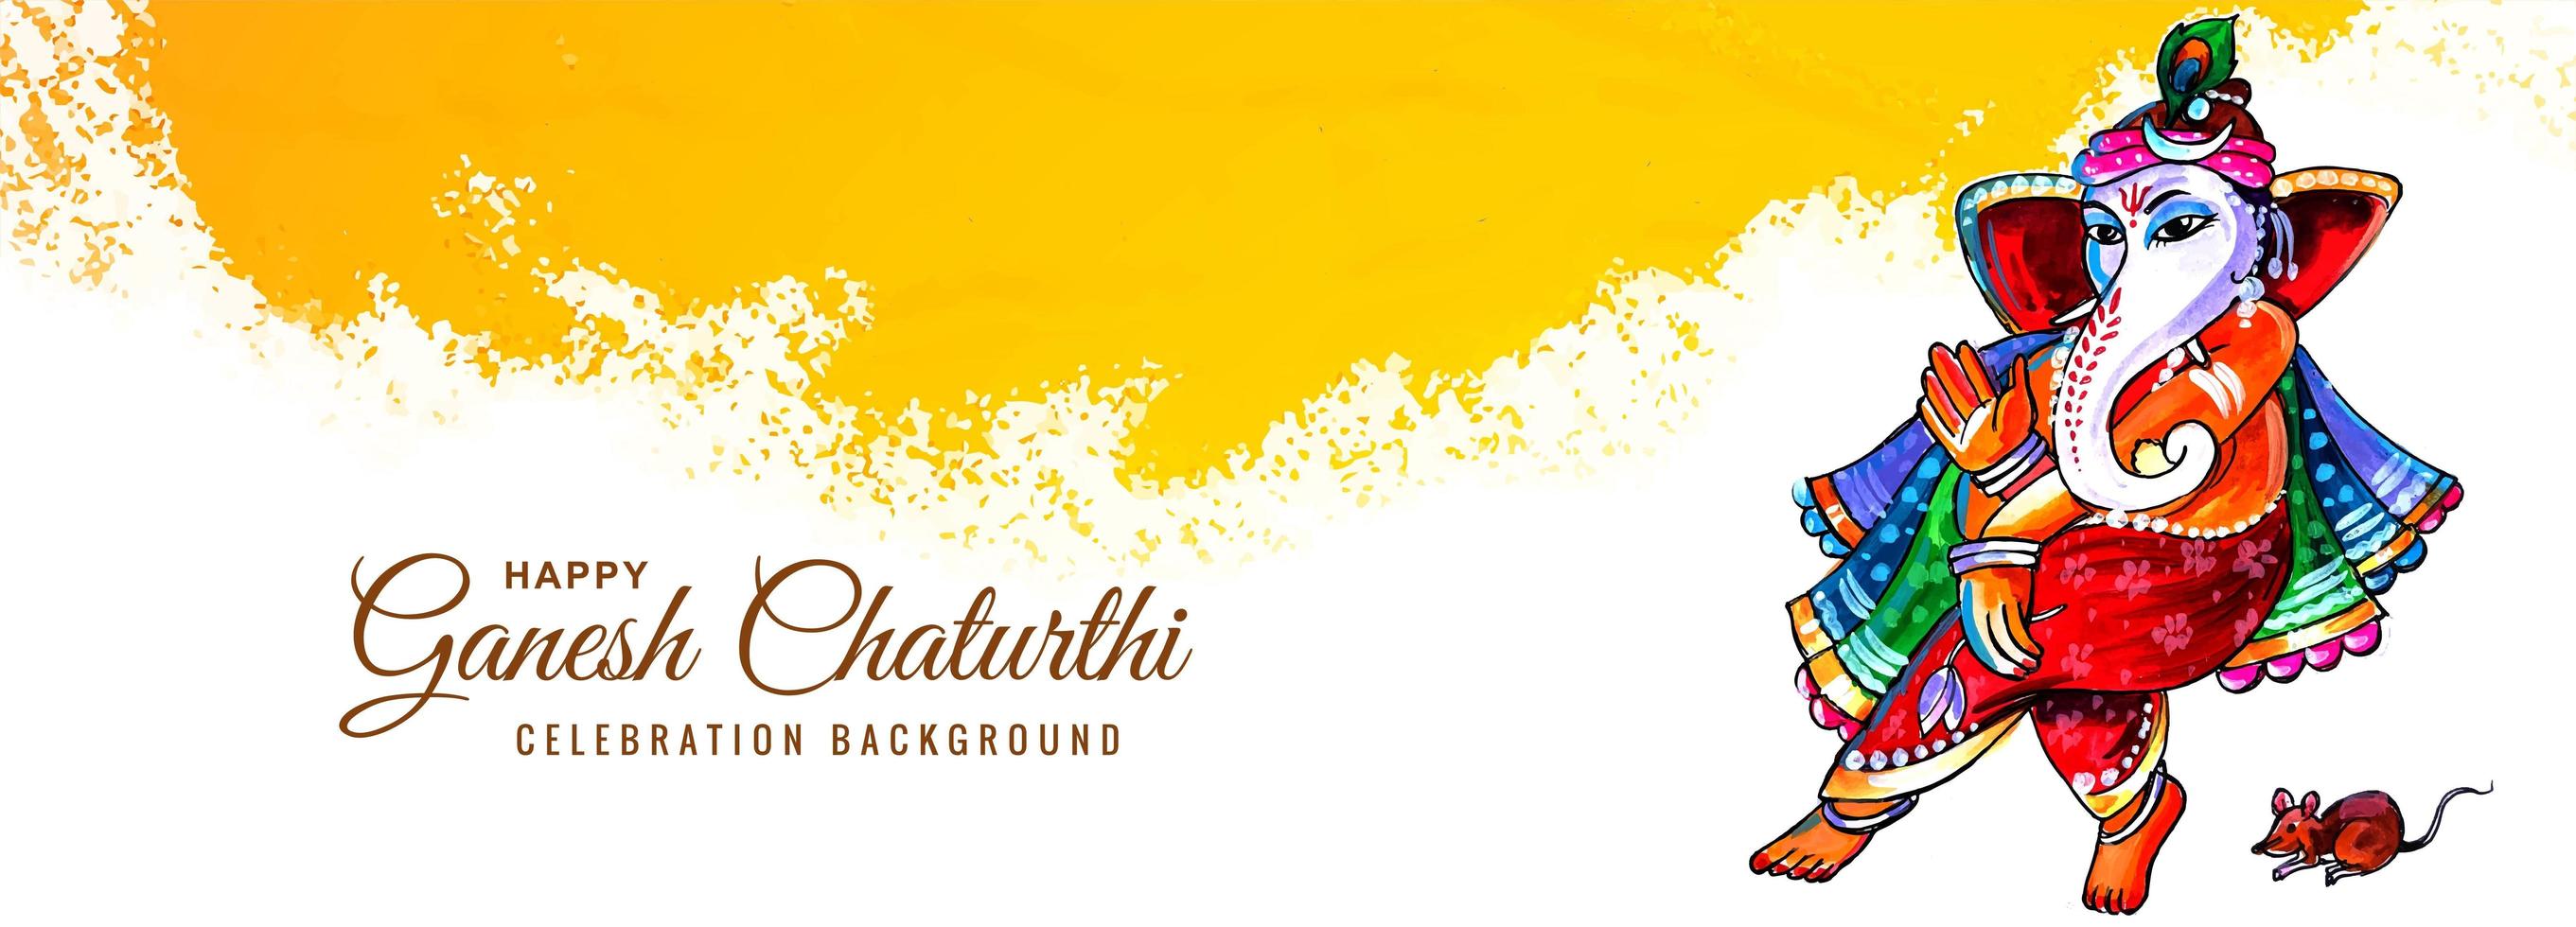 joyeux ganesh chaturthi utsav bannière du festival éclaboussures de peinture jaune vecteur